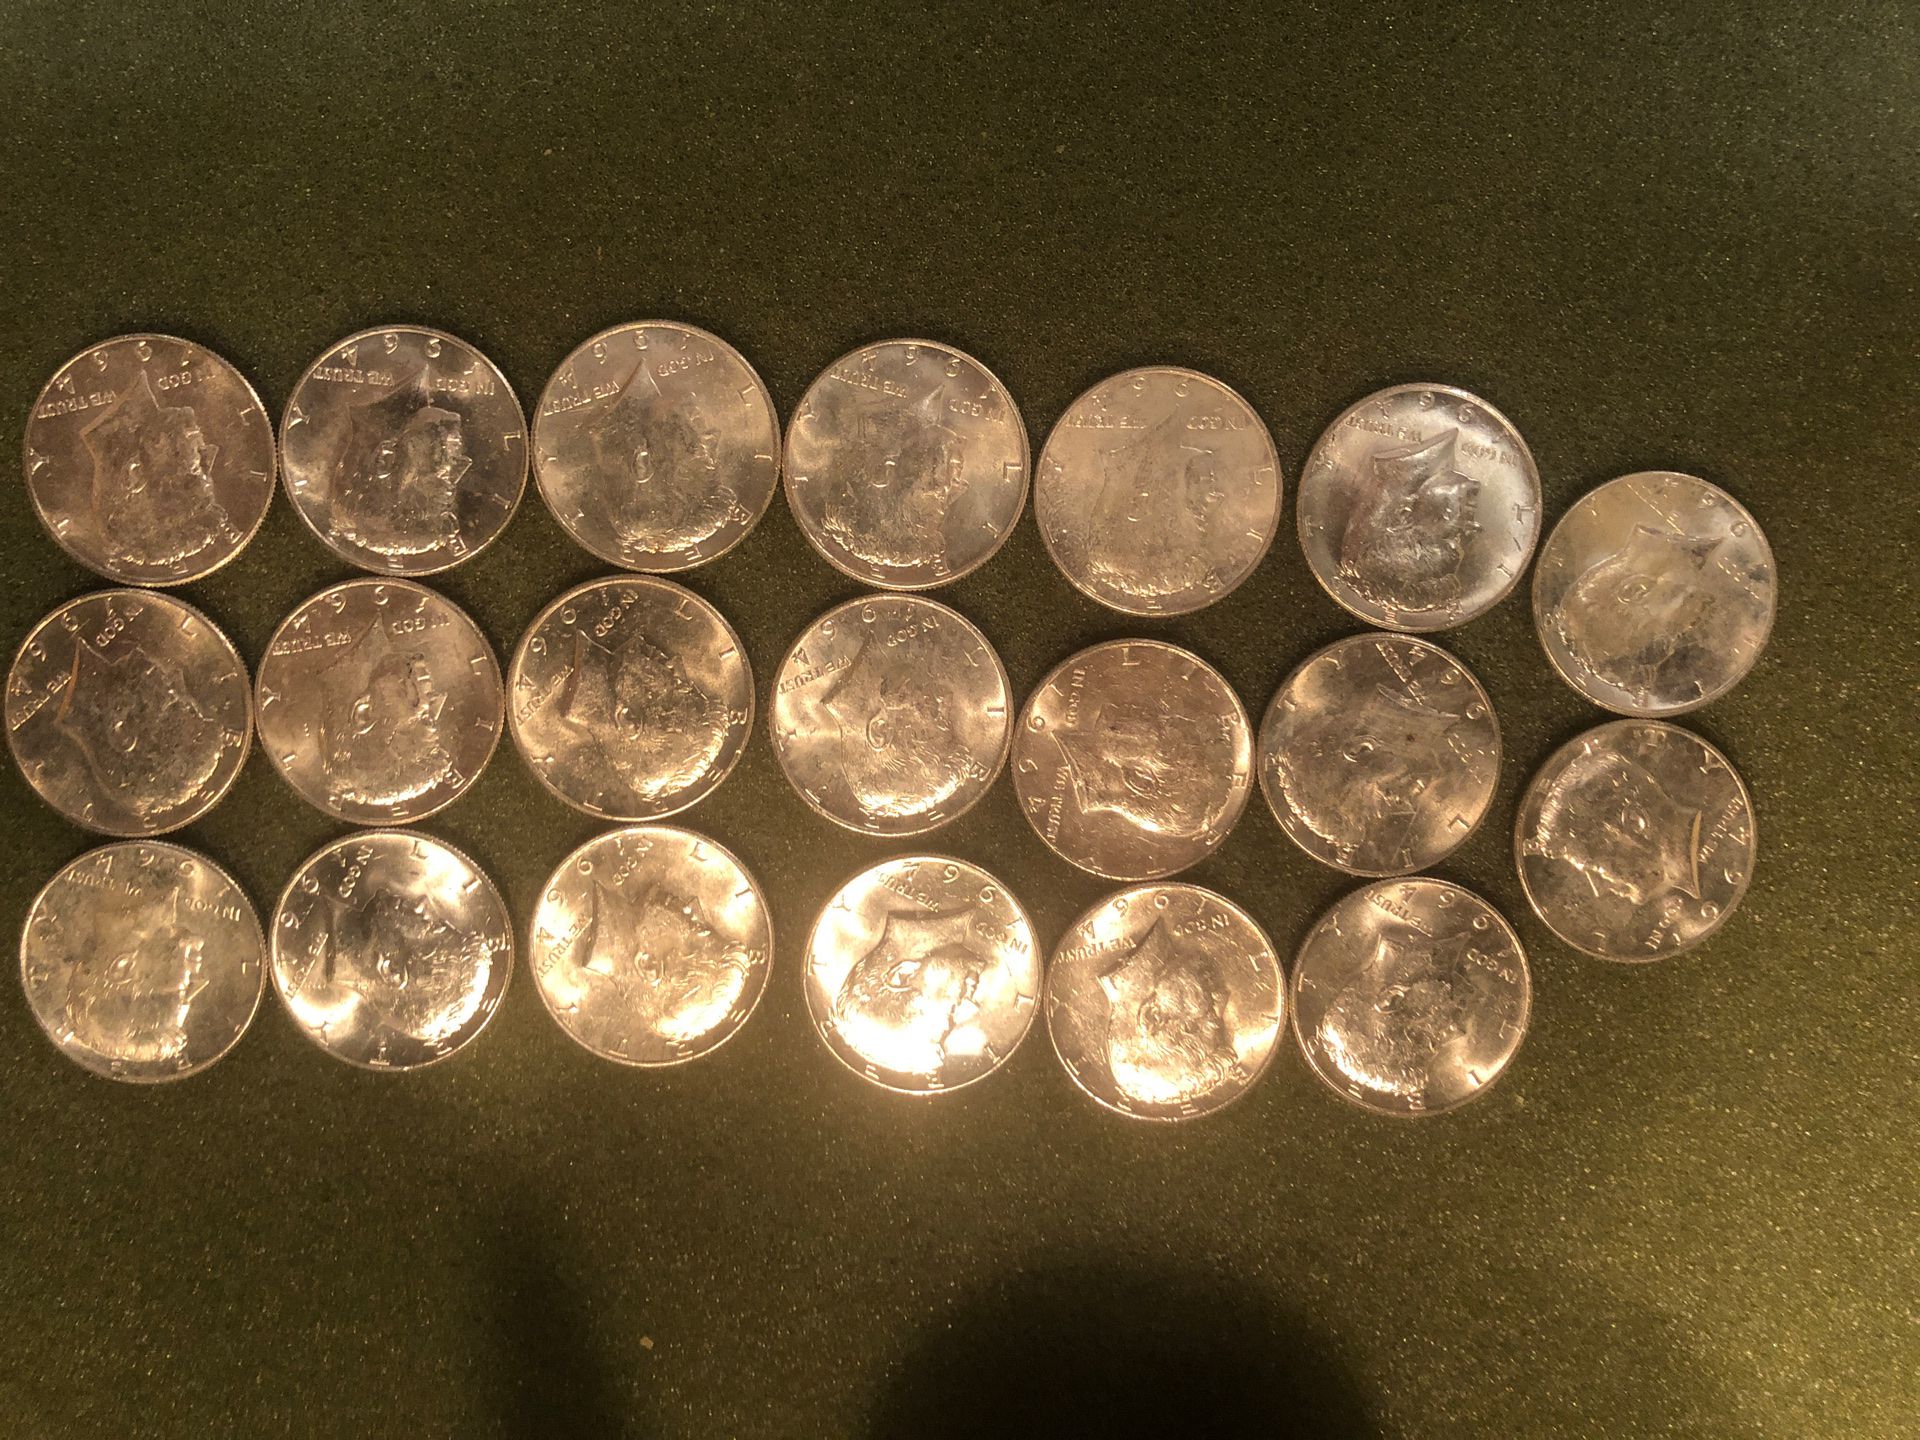 Kennedy silver half dollar coins